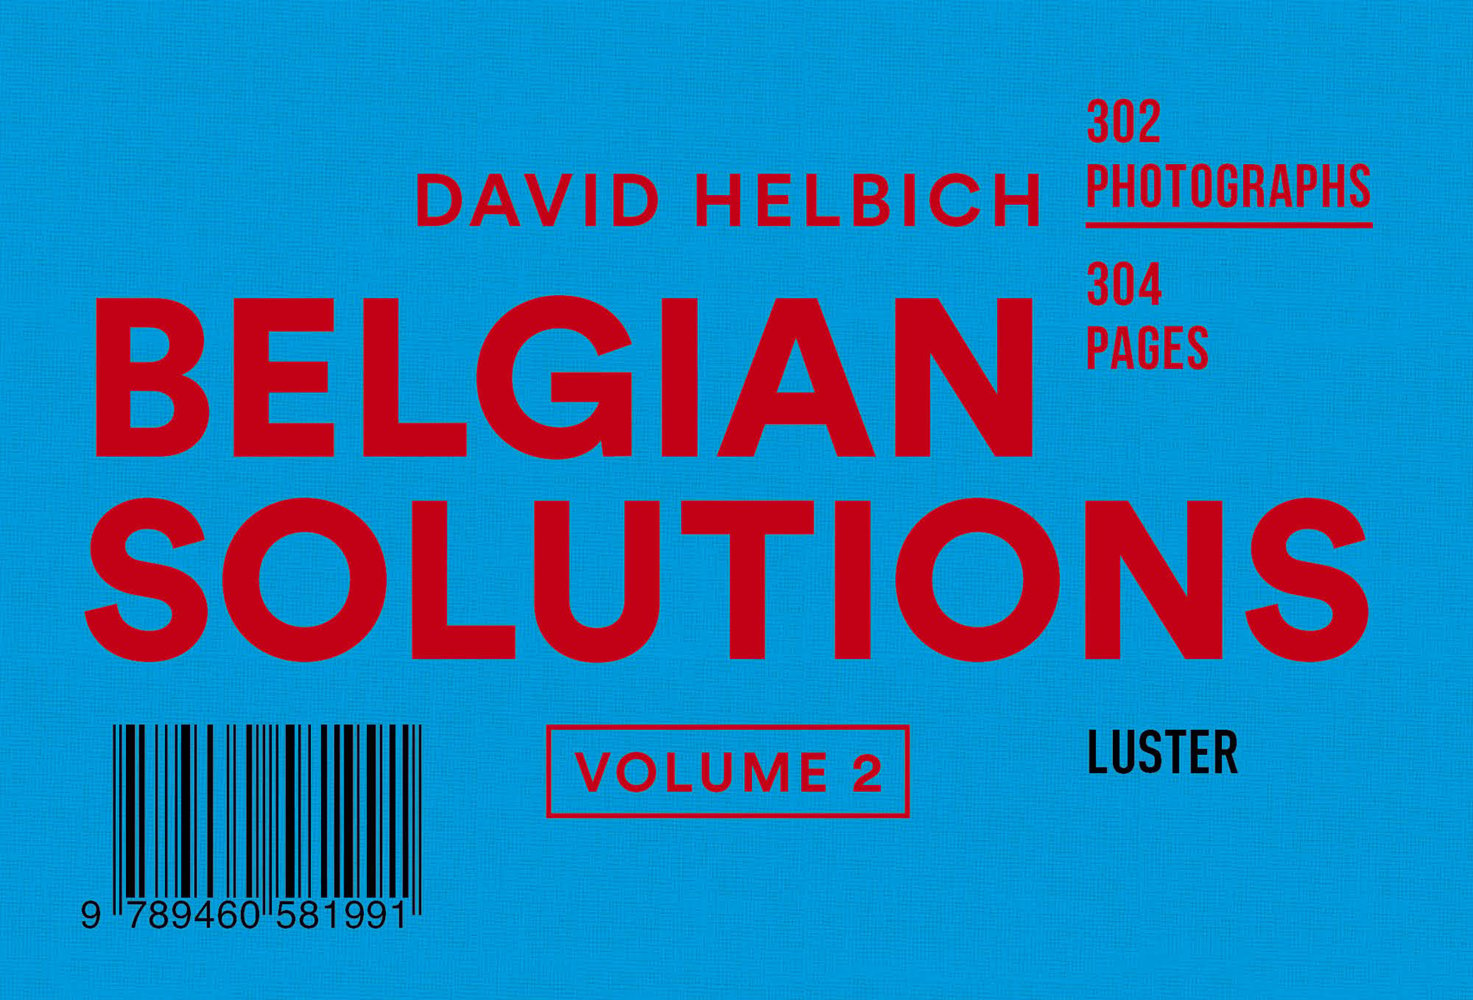 Belgian Solutions